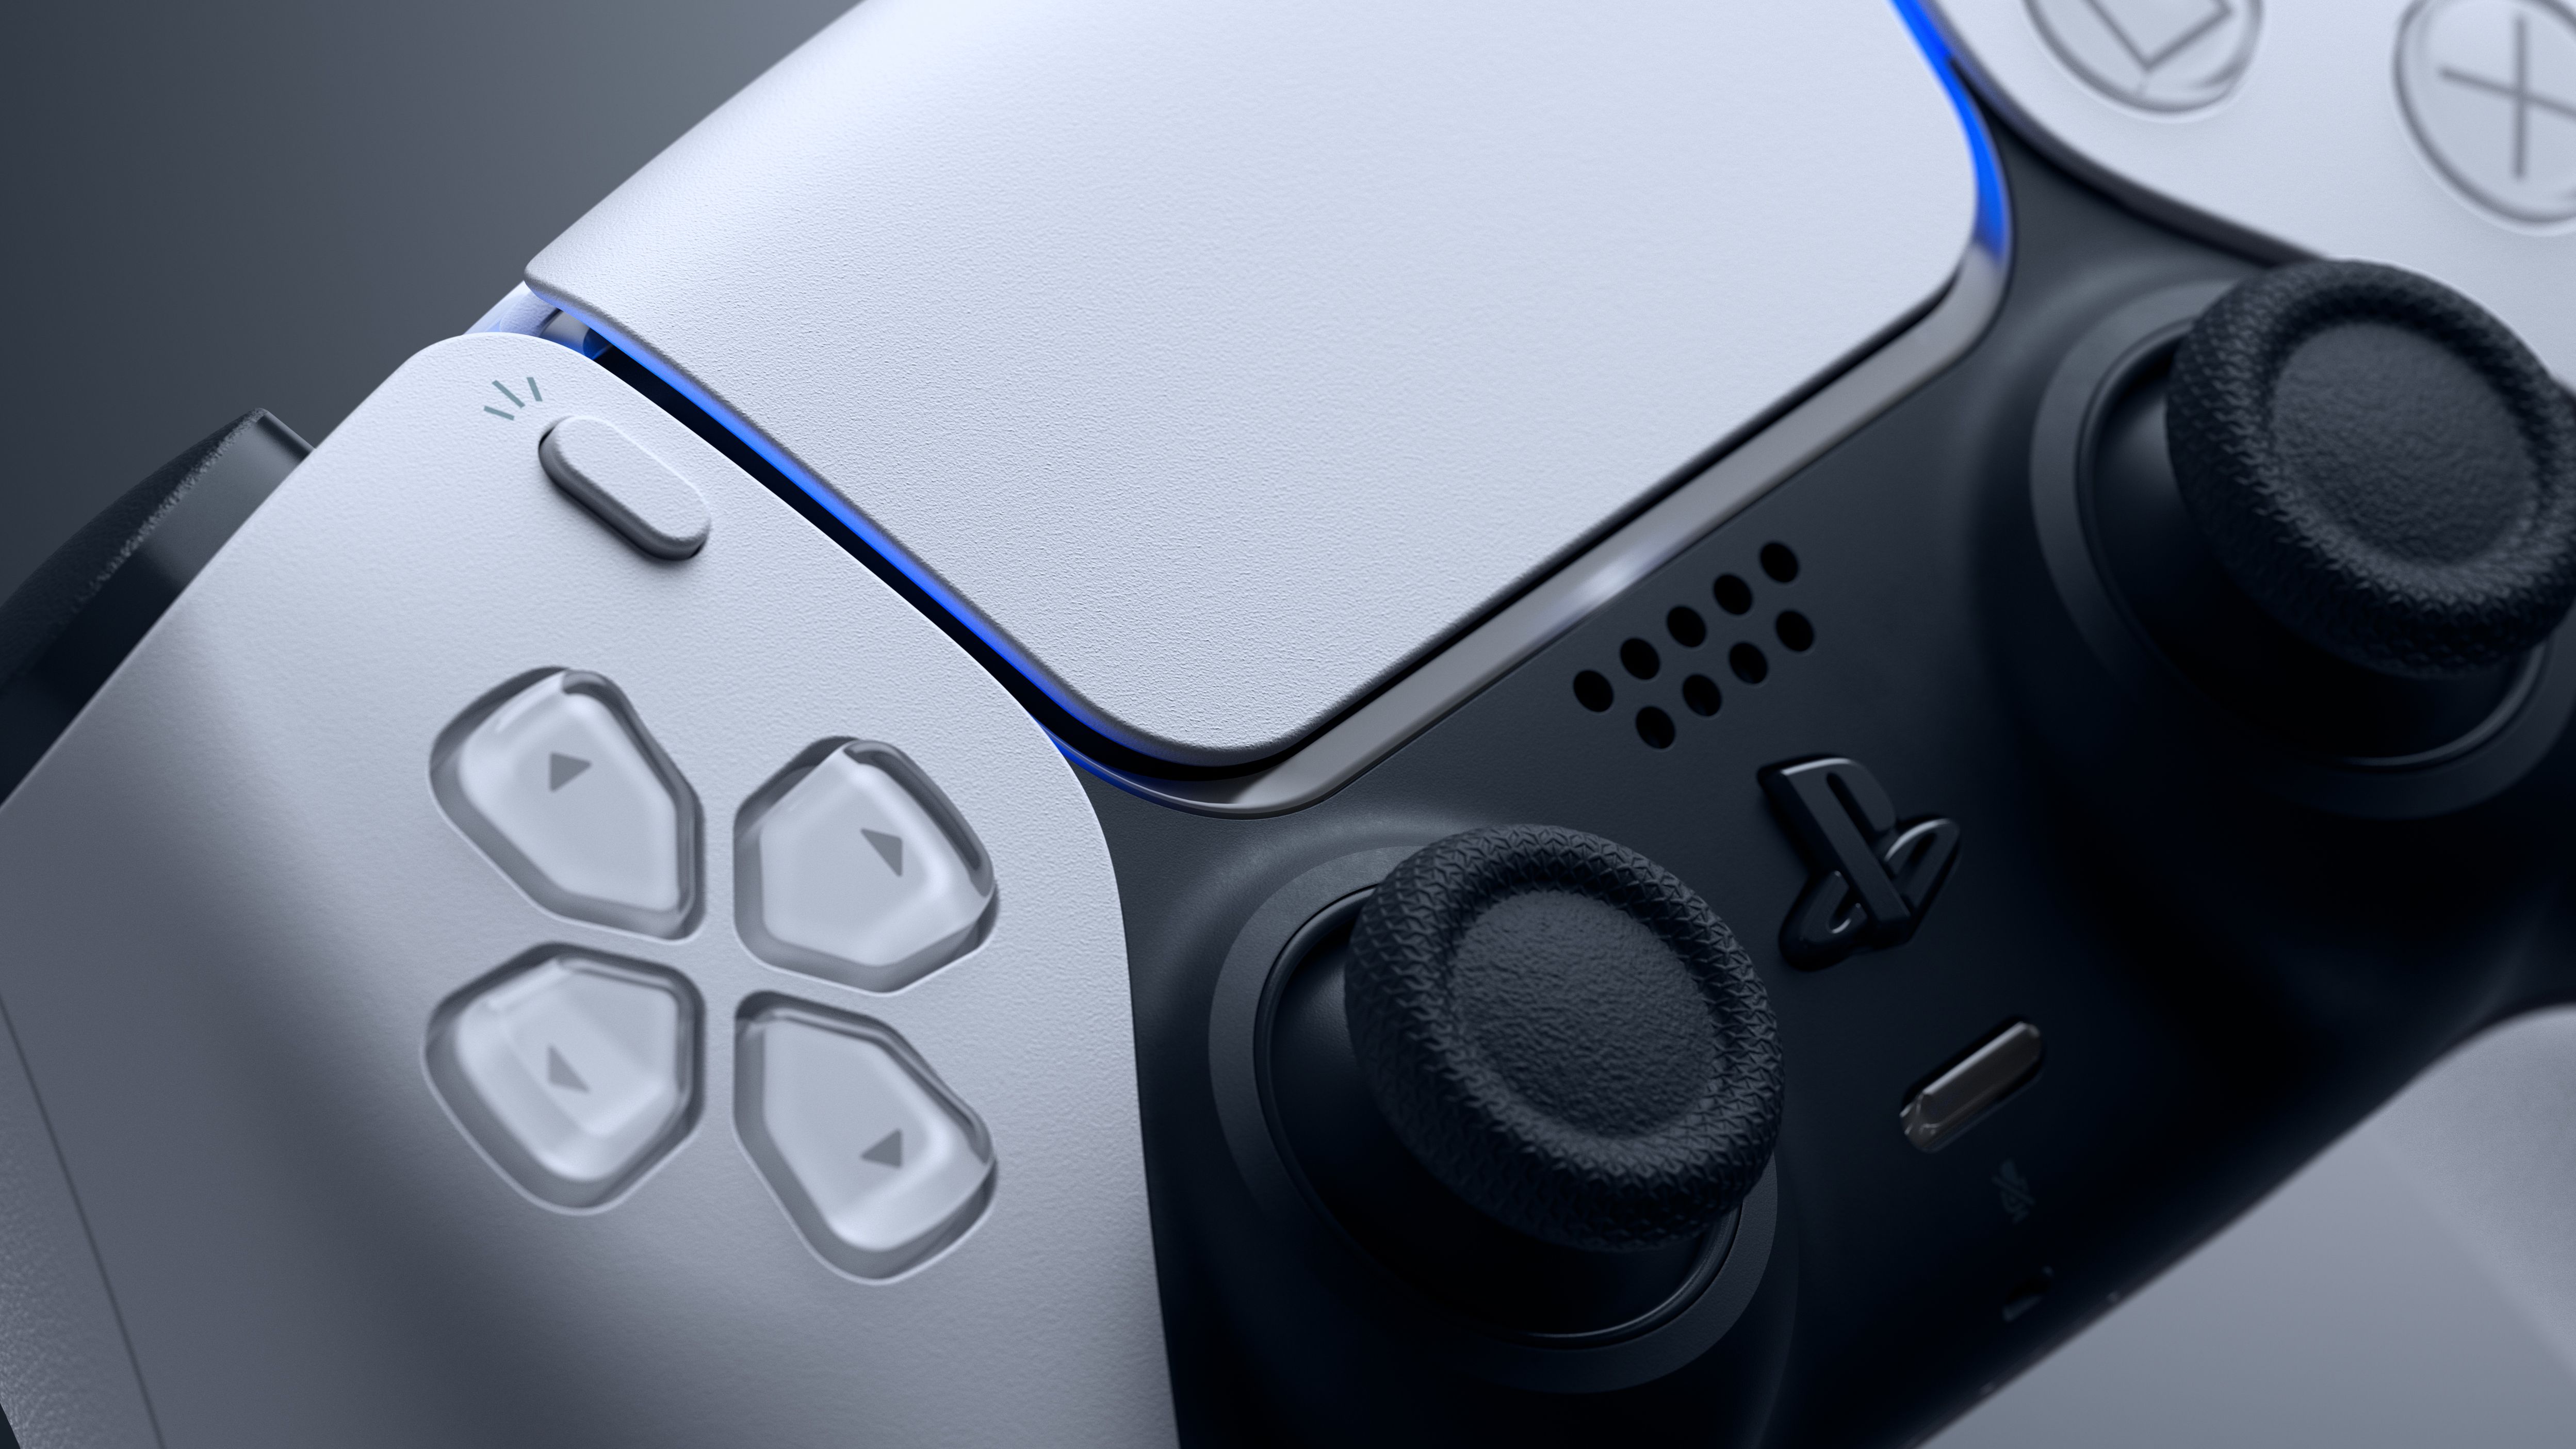 Promoção da Sony tem descontos de até 85% em jogos de PS4 - Olhar